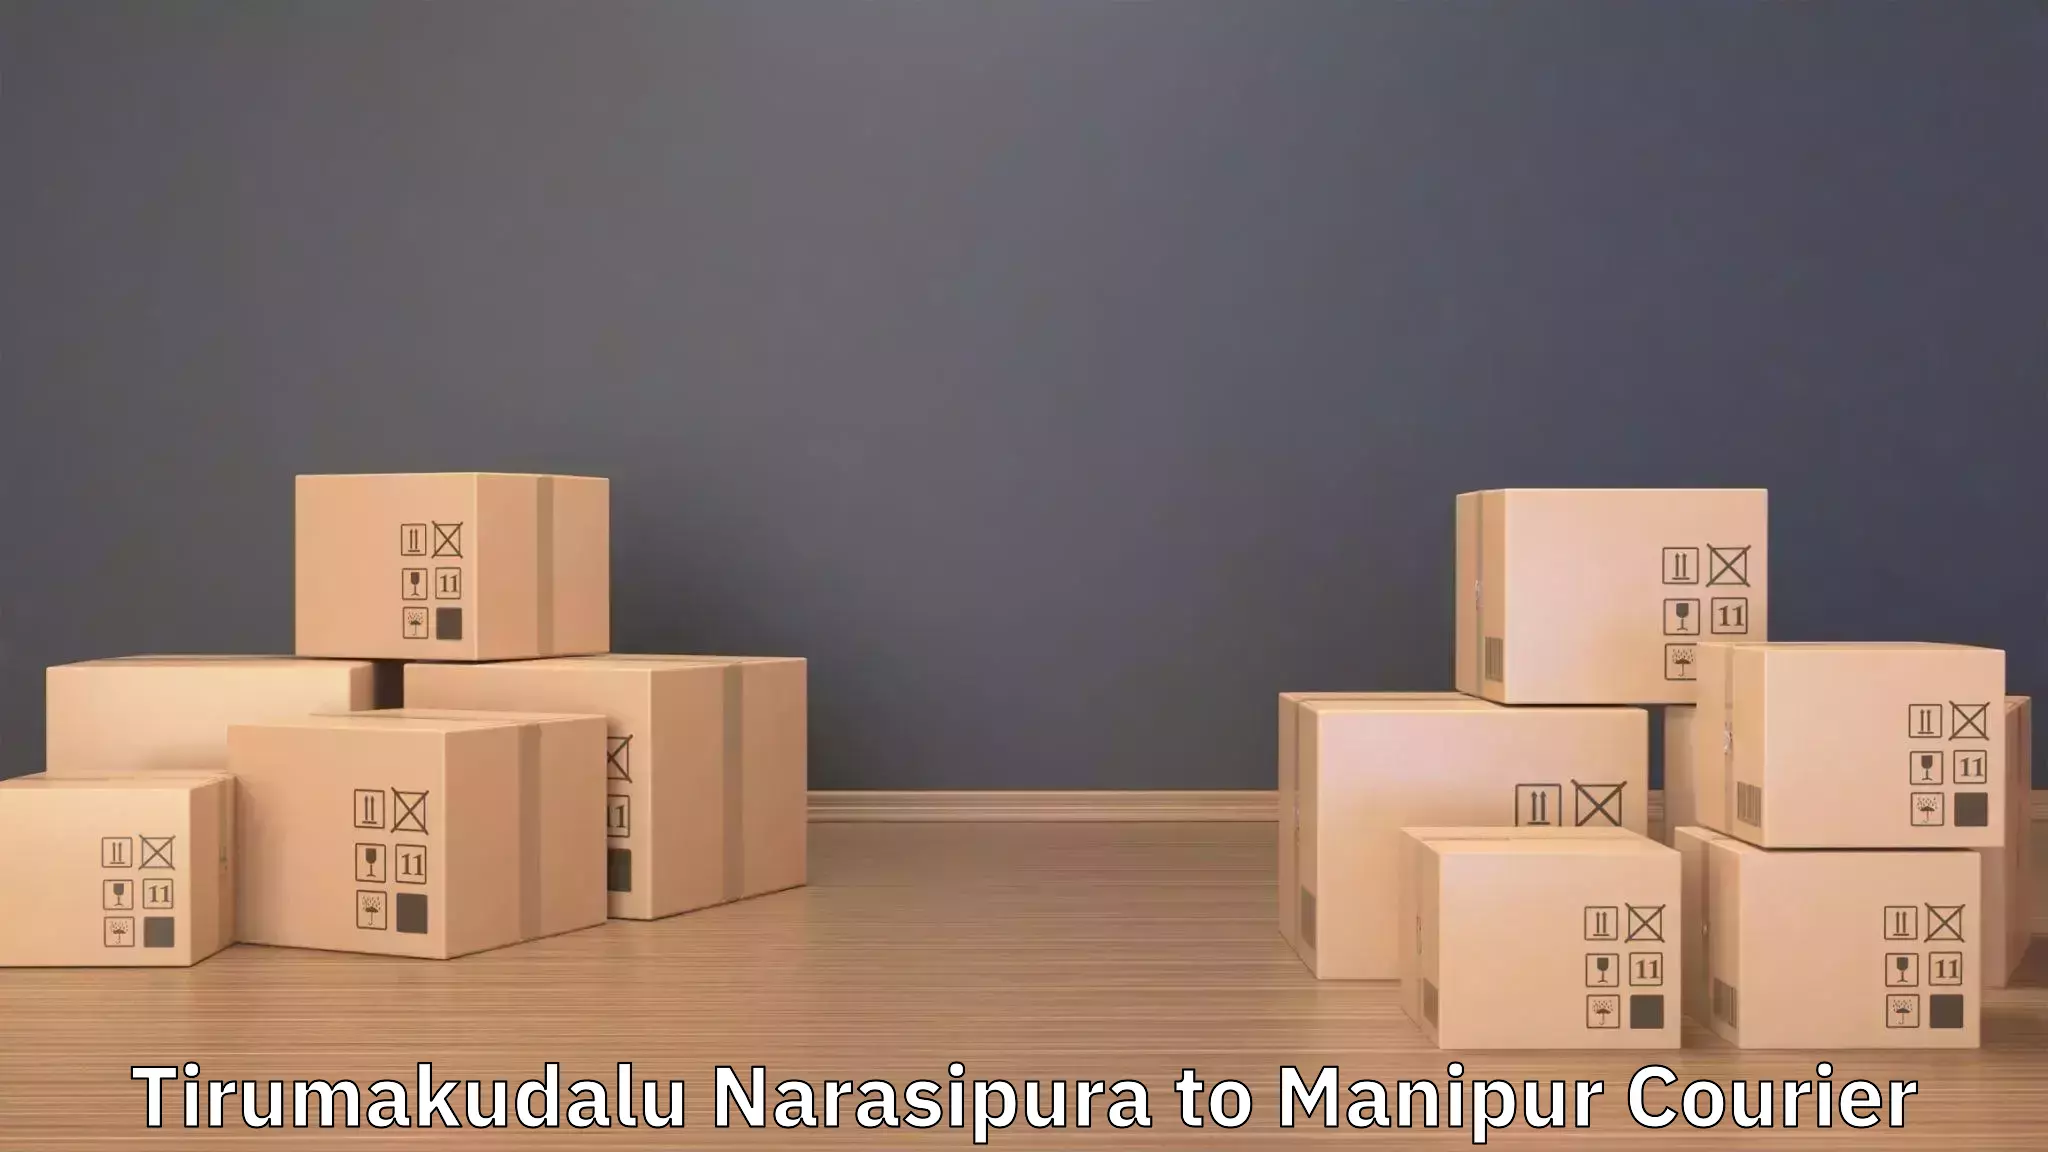 Quality furniture transport Tirumakudalu Narasipura to Manipur